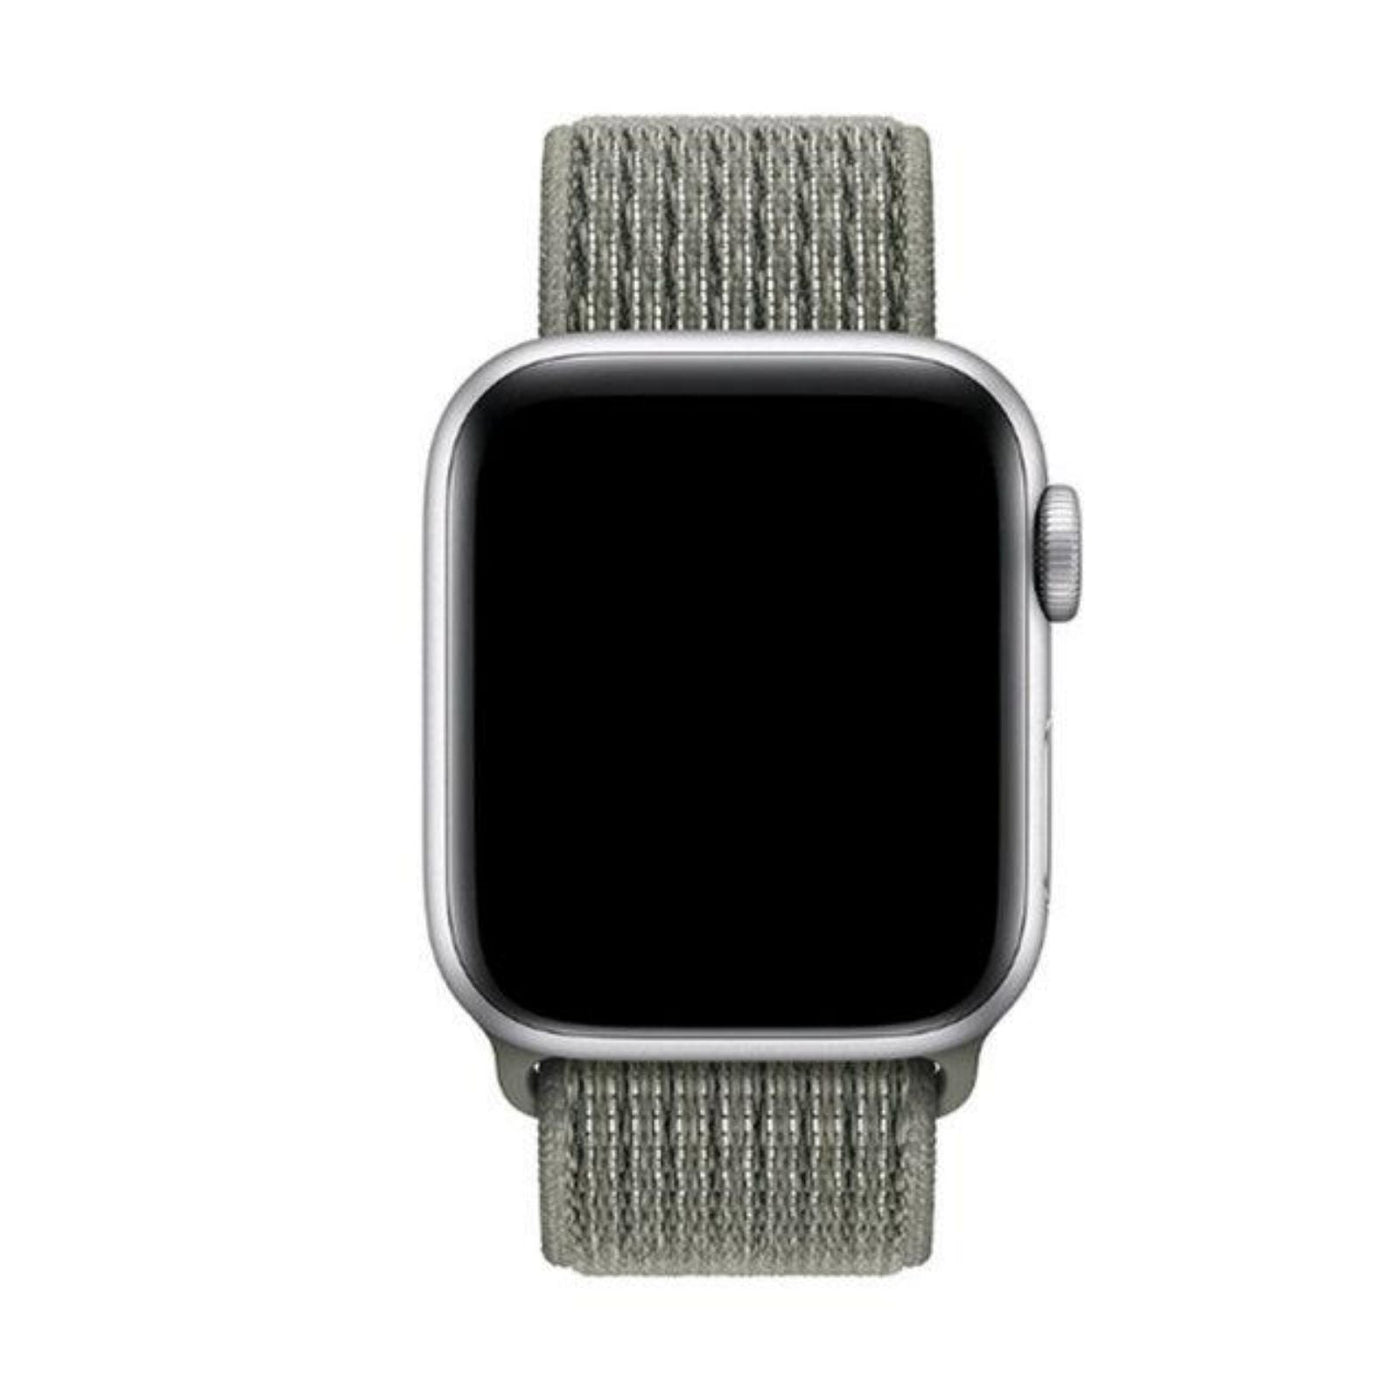 ALK Classic Nylon Band for Apple Watch in Spruce Fog - Alk Designs